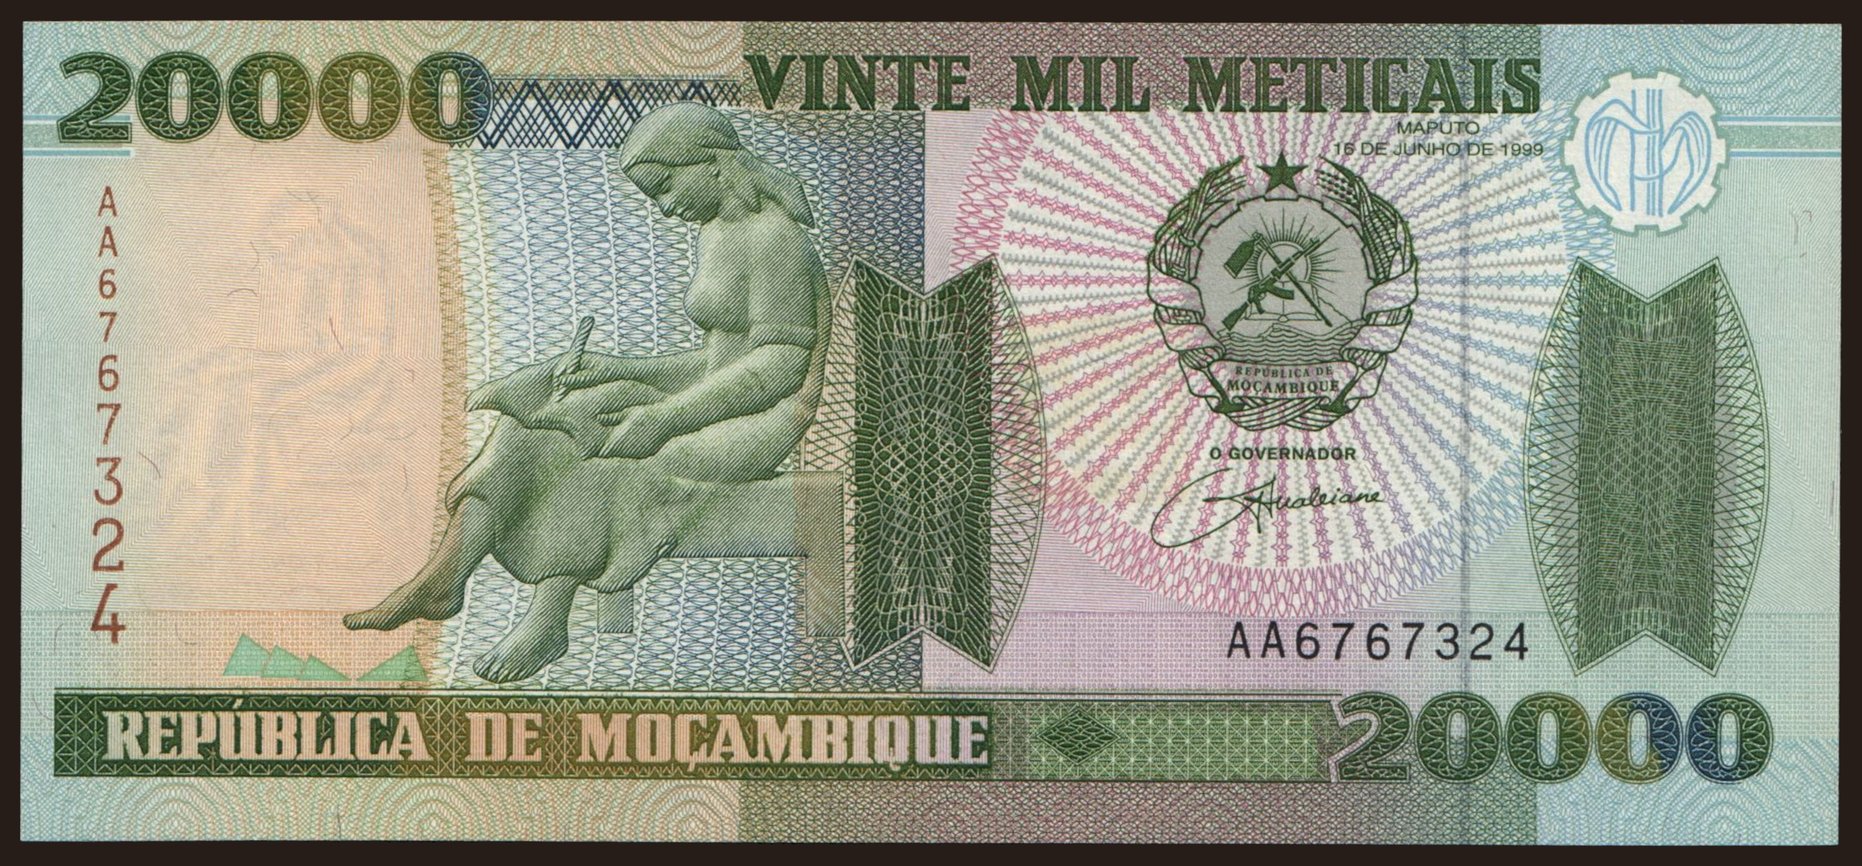 20.000 meticais, 1999